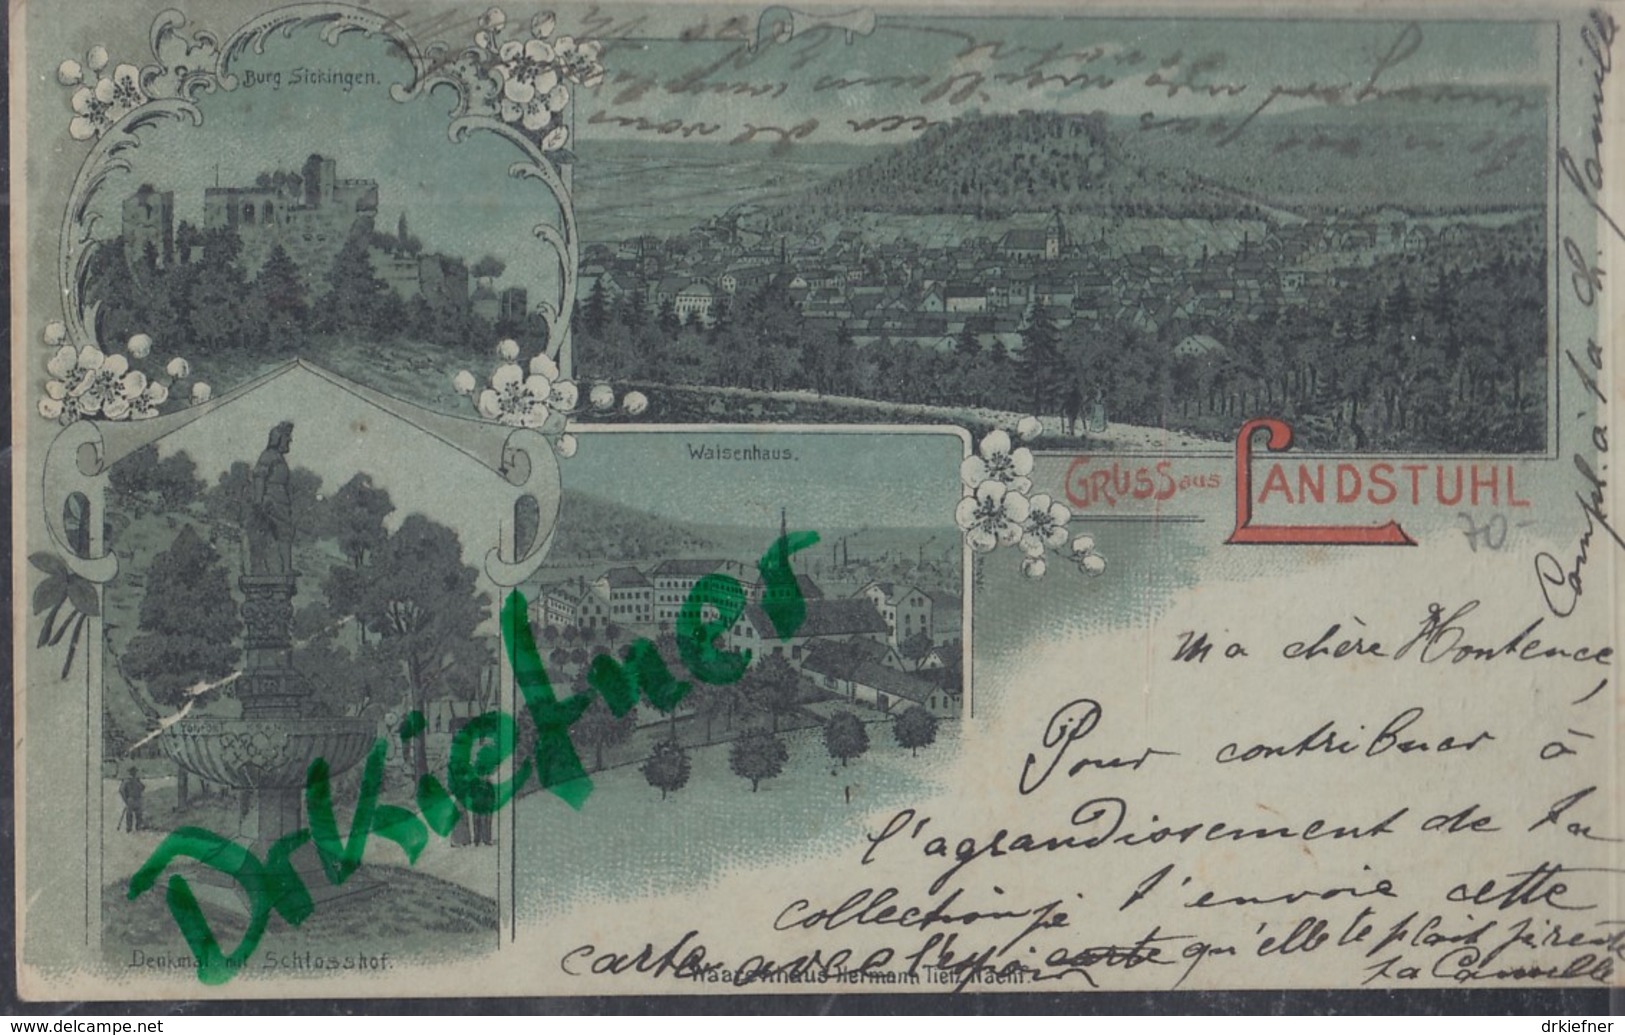 LITHOGRAPHIE: Gruss Aus LANDSTUHL, Pfalz, Mondscheinkarte, Um 1899, Ortsansicht, Burg Sickingen, Denkmal , Waisenhaus - Landstuhl